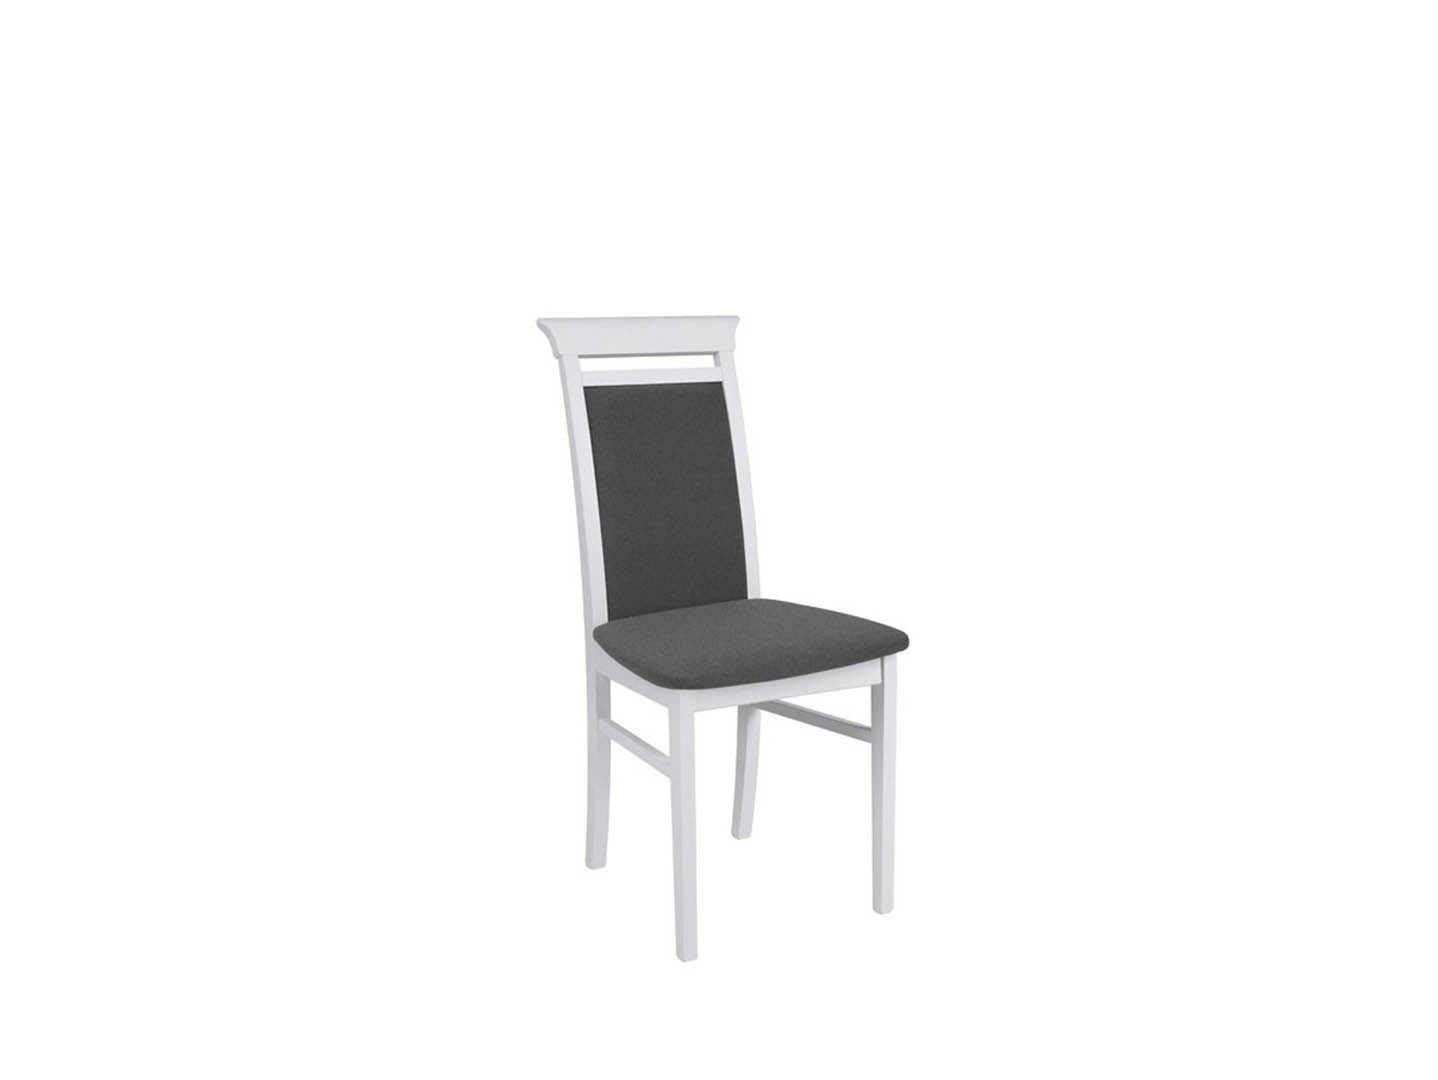 Stuhl IDENT - ALPENWEISS / DARK GREY IDENT Tische und Stühle Echtholz Stuhl Galleriebild Gross